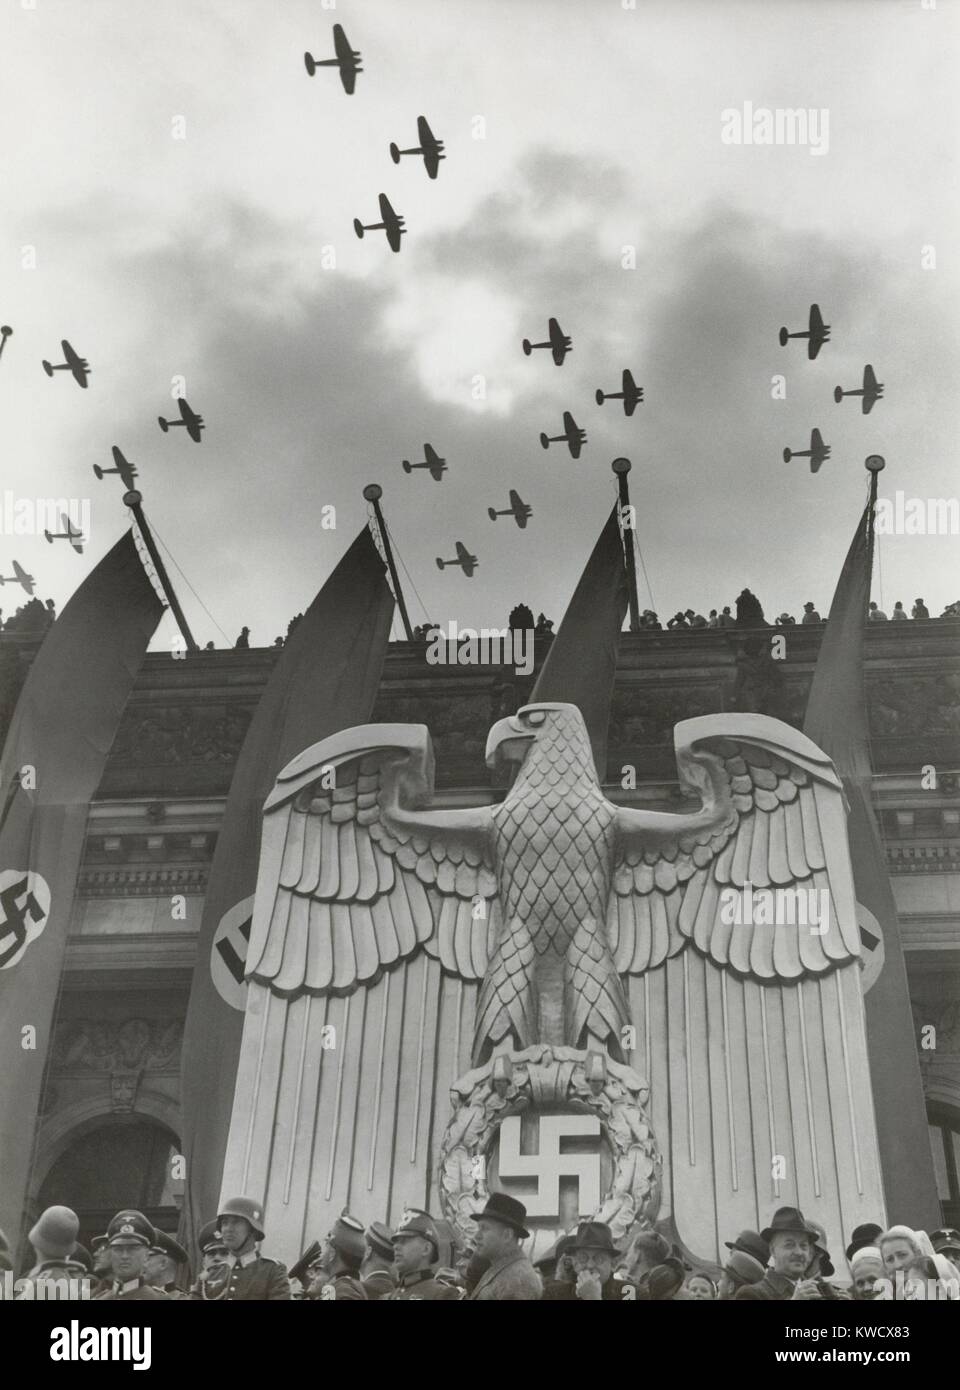 Luftwaffe Fly-By zu Ehren Hitlers Geburtstag in Charlottenburg, Berlin, 20. April 1939. Auf dem Gebäude befindet sich eine Skulptur von einem Nazi-deutschen Adler und Fahnen mit Hakenkreuzen (BSLOC 2017 2 70) Stockfoto